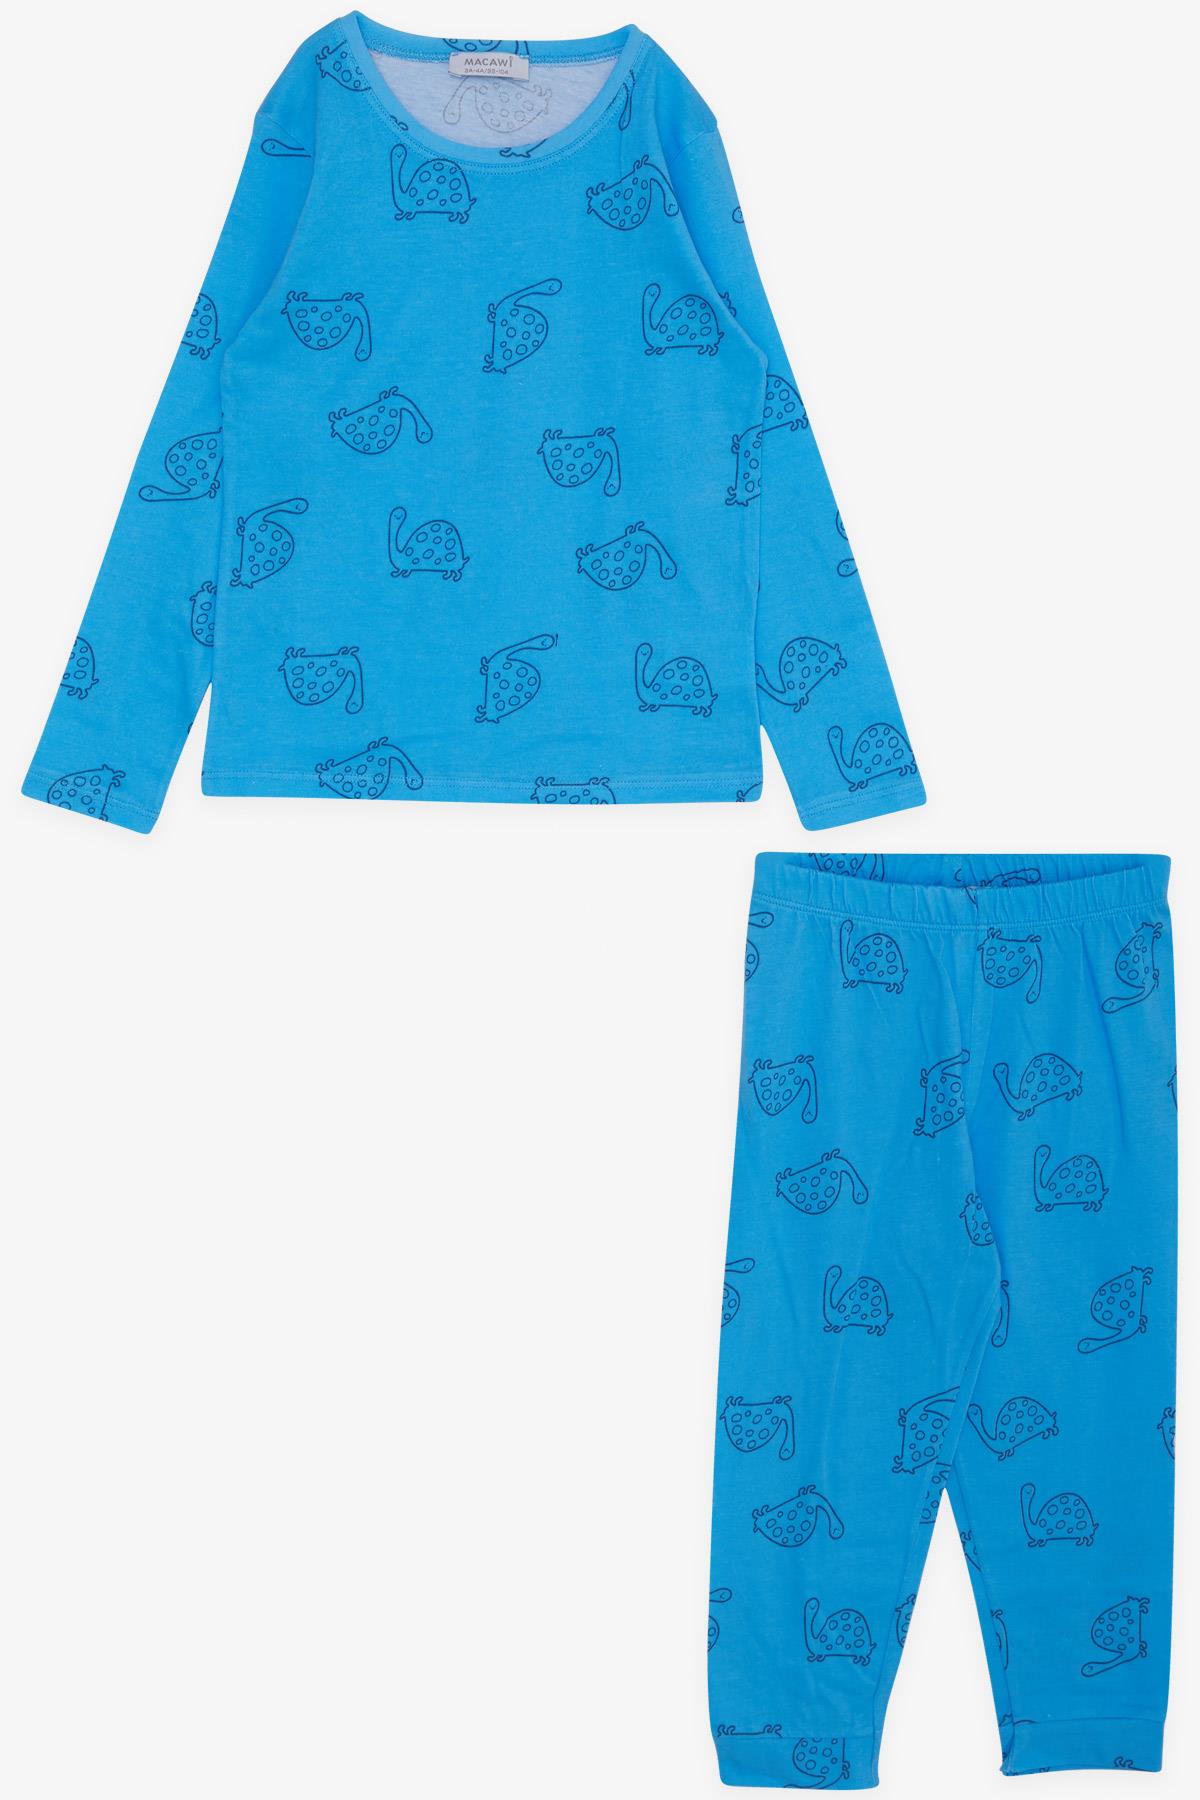 Erkek Çocuk Pijama Takımı Kaplumbağa Desenli Mavi 1.5-5 Yaş - Yumuşak  Kumaşlı Çocuk Pijamaları | Breeze